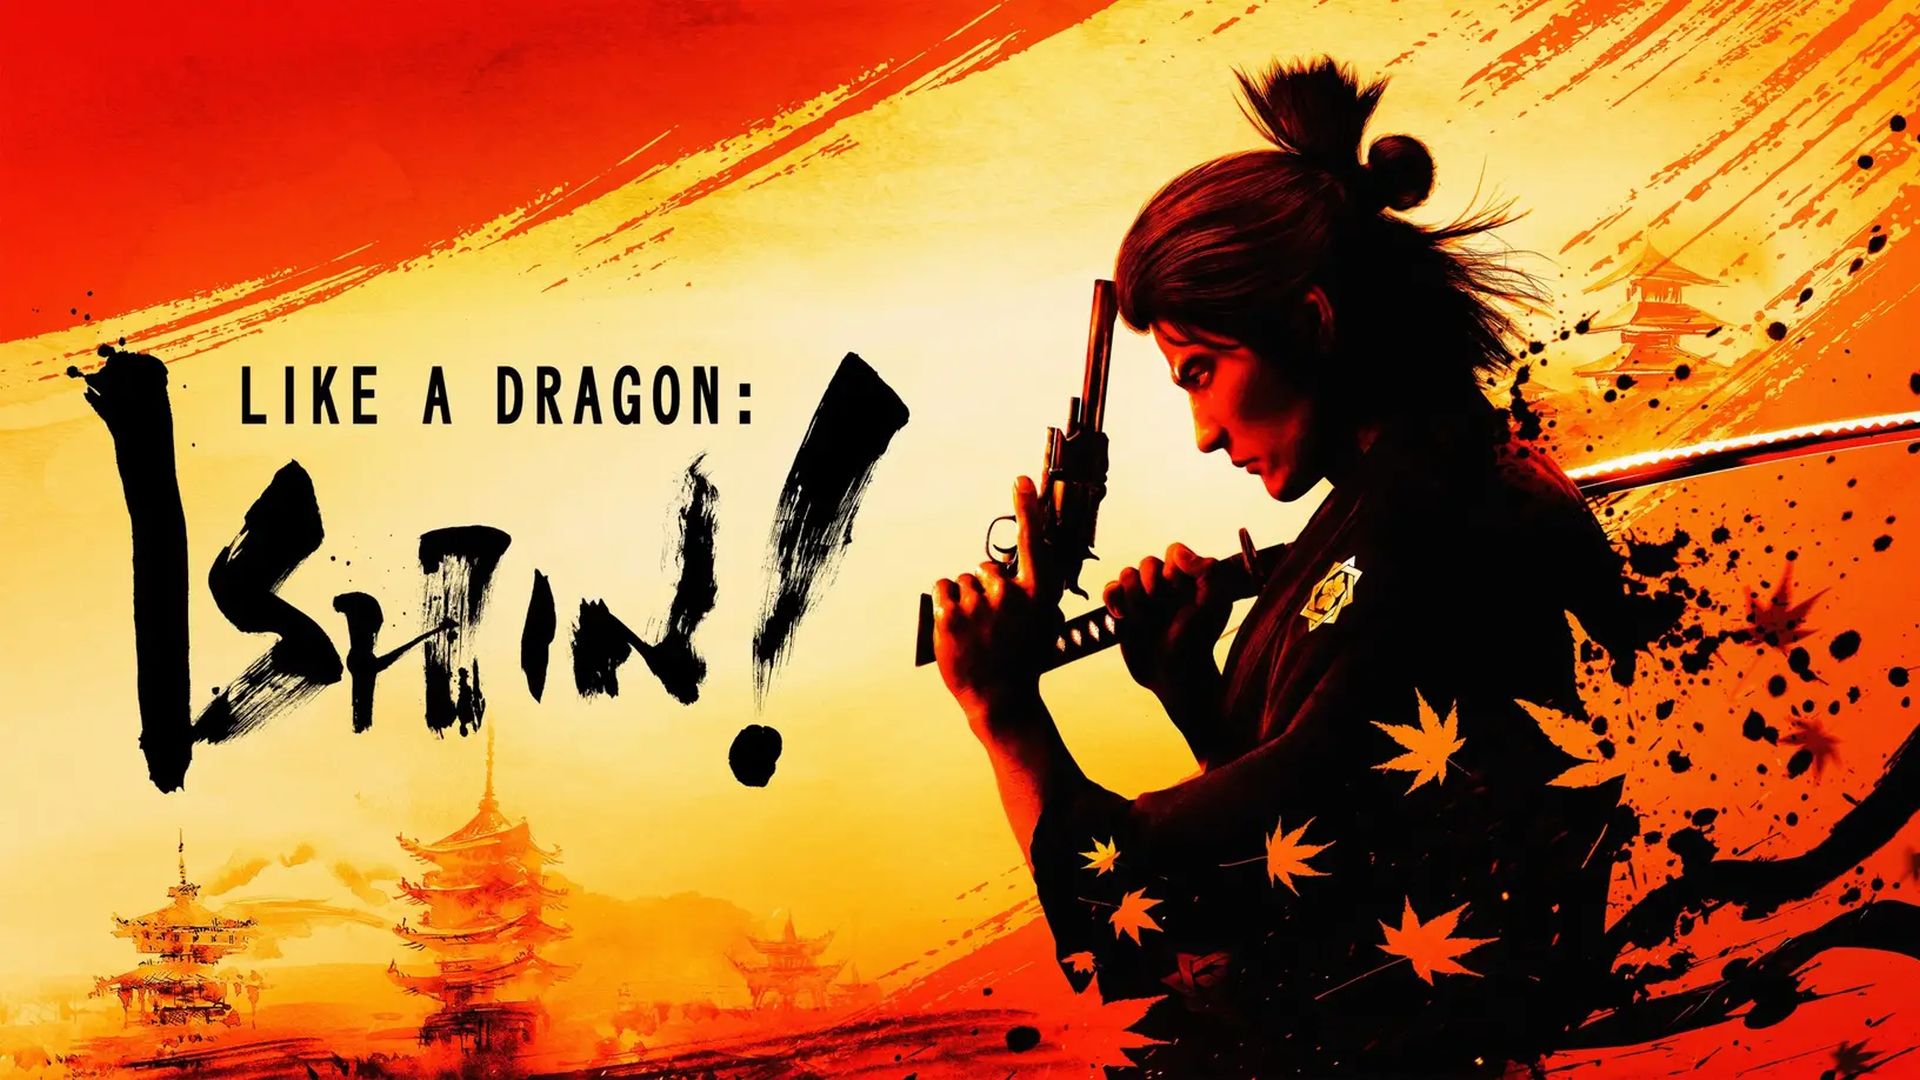 نمایش سبک مبارزه Brawler در تریلر جدید بازی Like a Dragon: Ishin